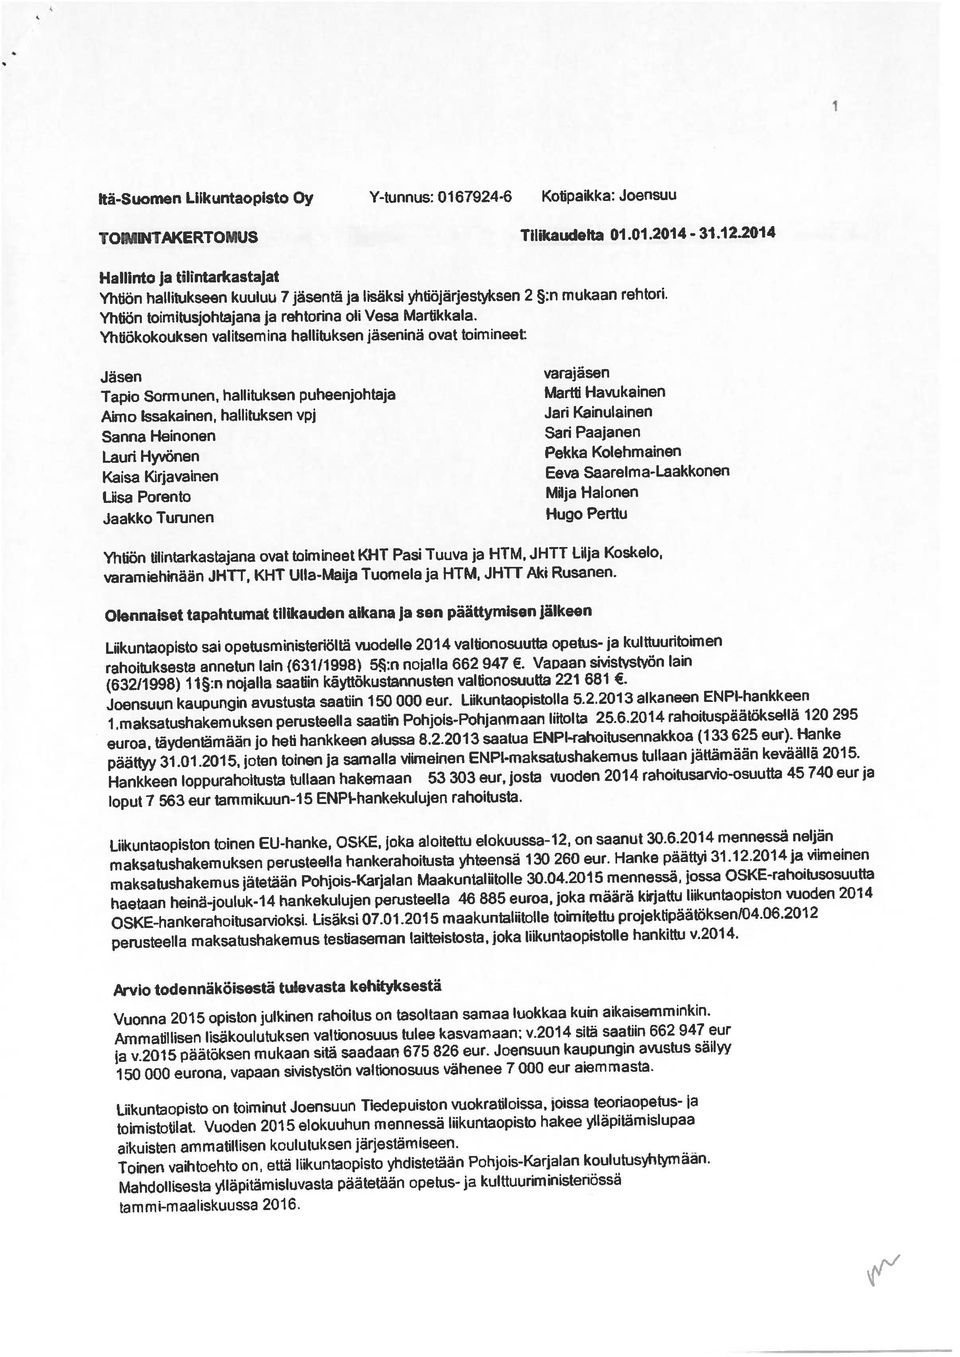 Kolehmainen TOIMINTAKERTOMUS Tilikaucjefta 01.01.2014-31.12.2014 Liisa Porento Milja Halonen Yhtiön hallitukseen kuuluu 7 jäsentä ja hsäksi ytitiöjärjestyksen 2 :n mukaan rehtori.